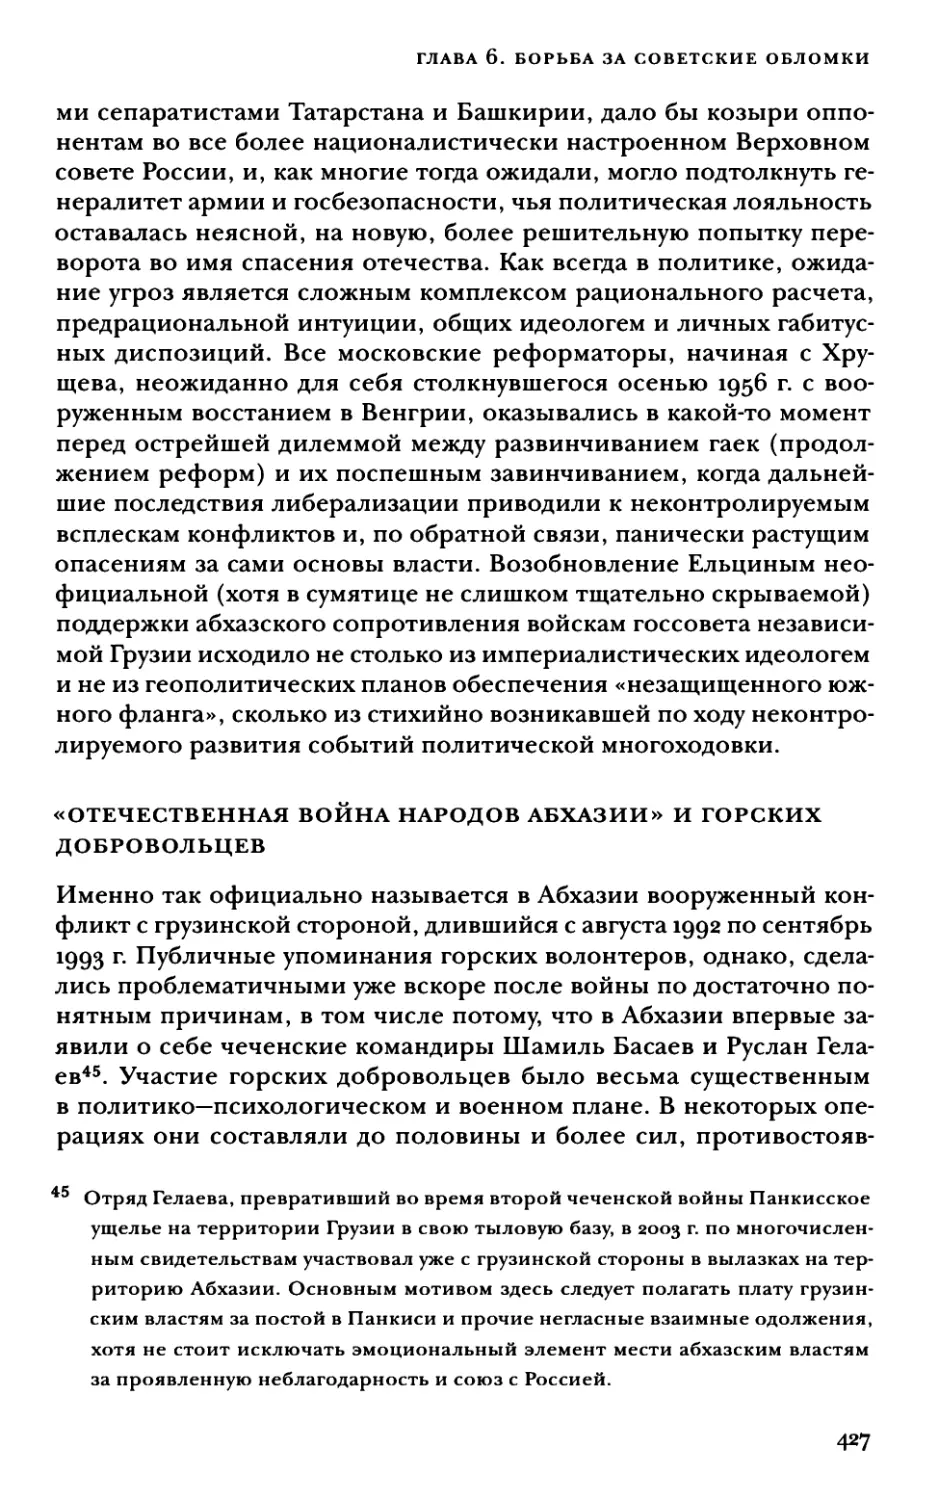 «Отечественная война народов Абхазии» и горских добровольцев